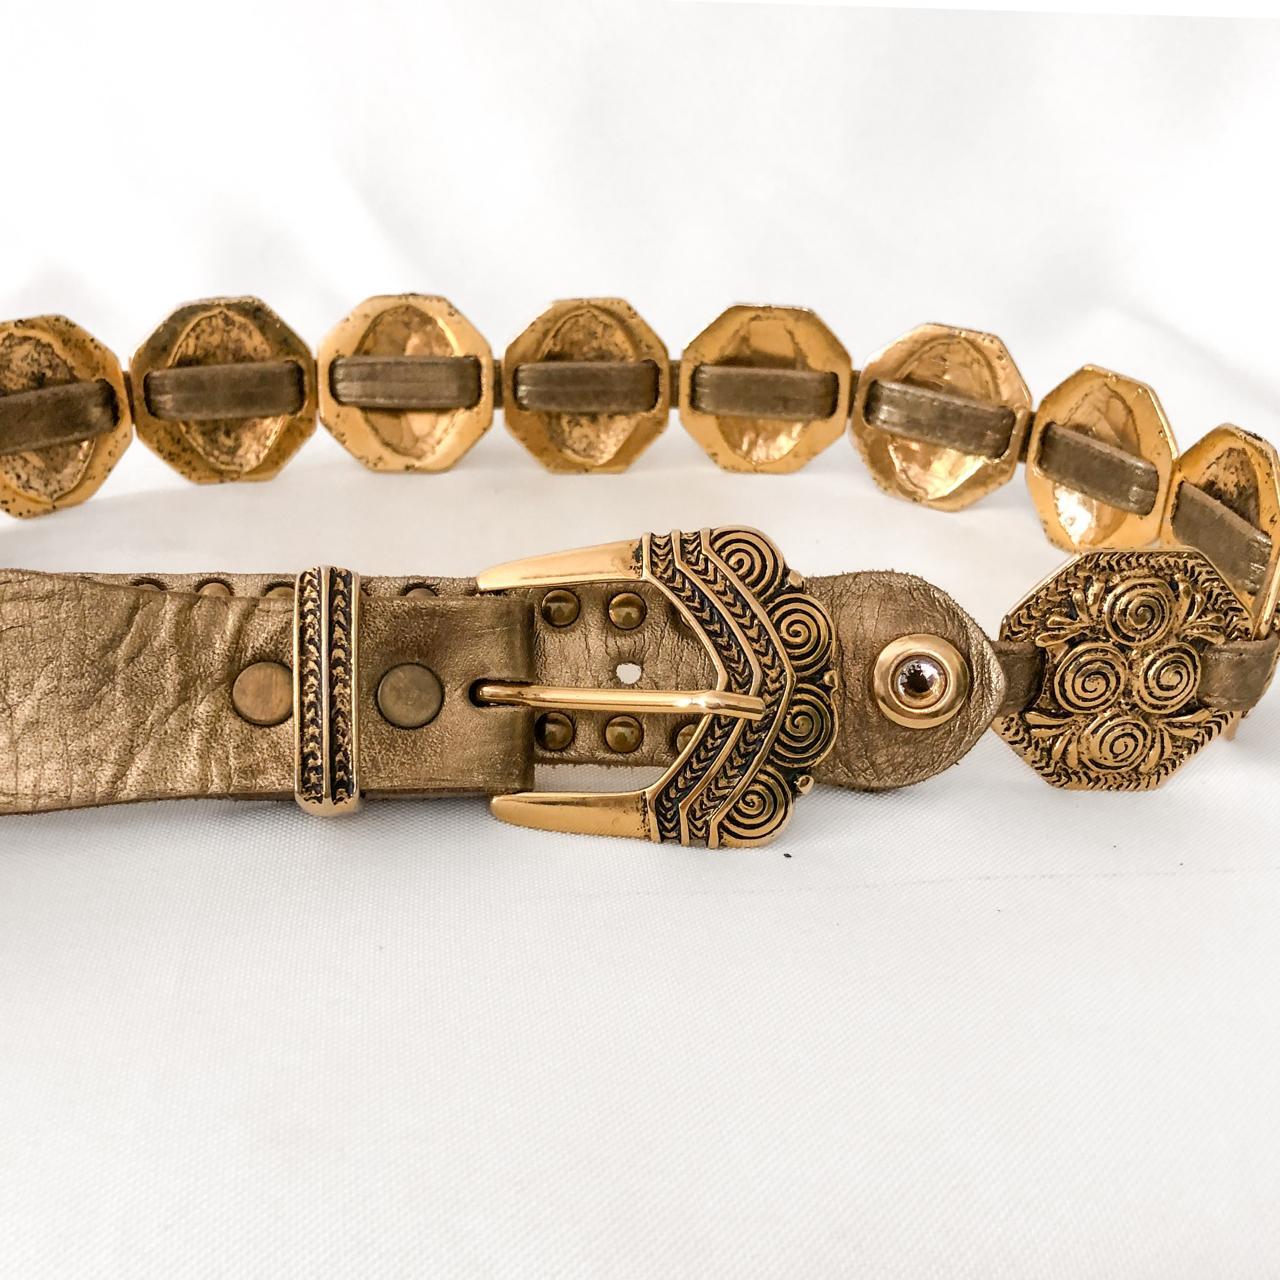 Vintage Gold Medallion Chain Belt SHOP FAVE.... - Depop